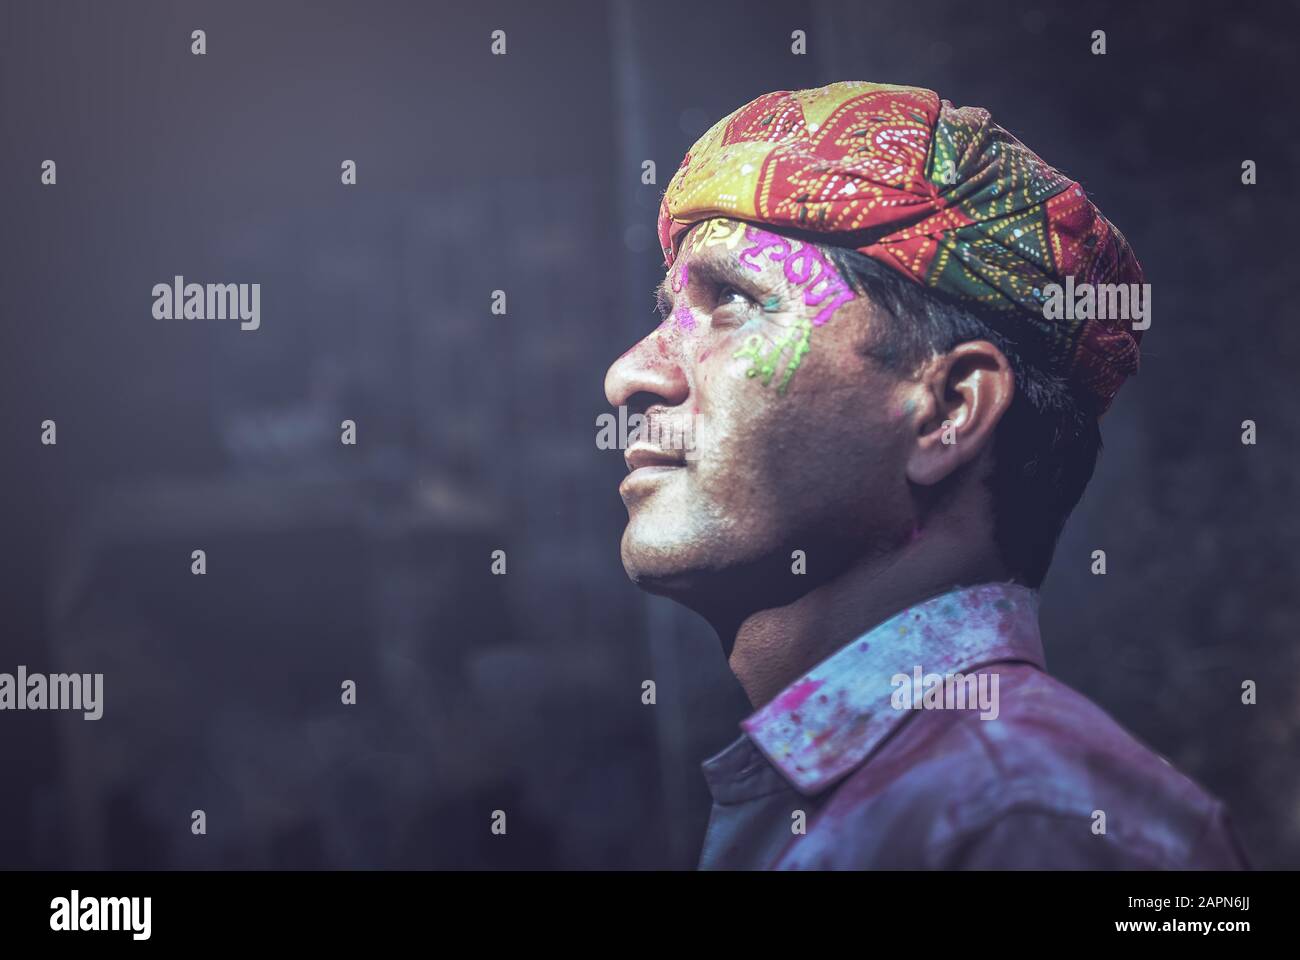 Mathura, INDIEN - Februar 25.2018: Porträt eines indianischen Mannes, das mit Farben auf dem Gesicht verschmiert ist, posiert für ein Foto während der Holi-Festfeier Stockfoto